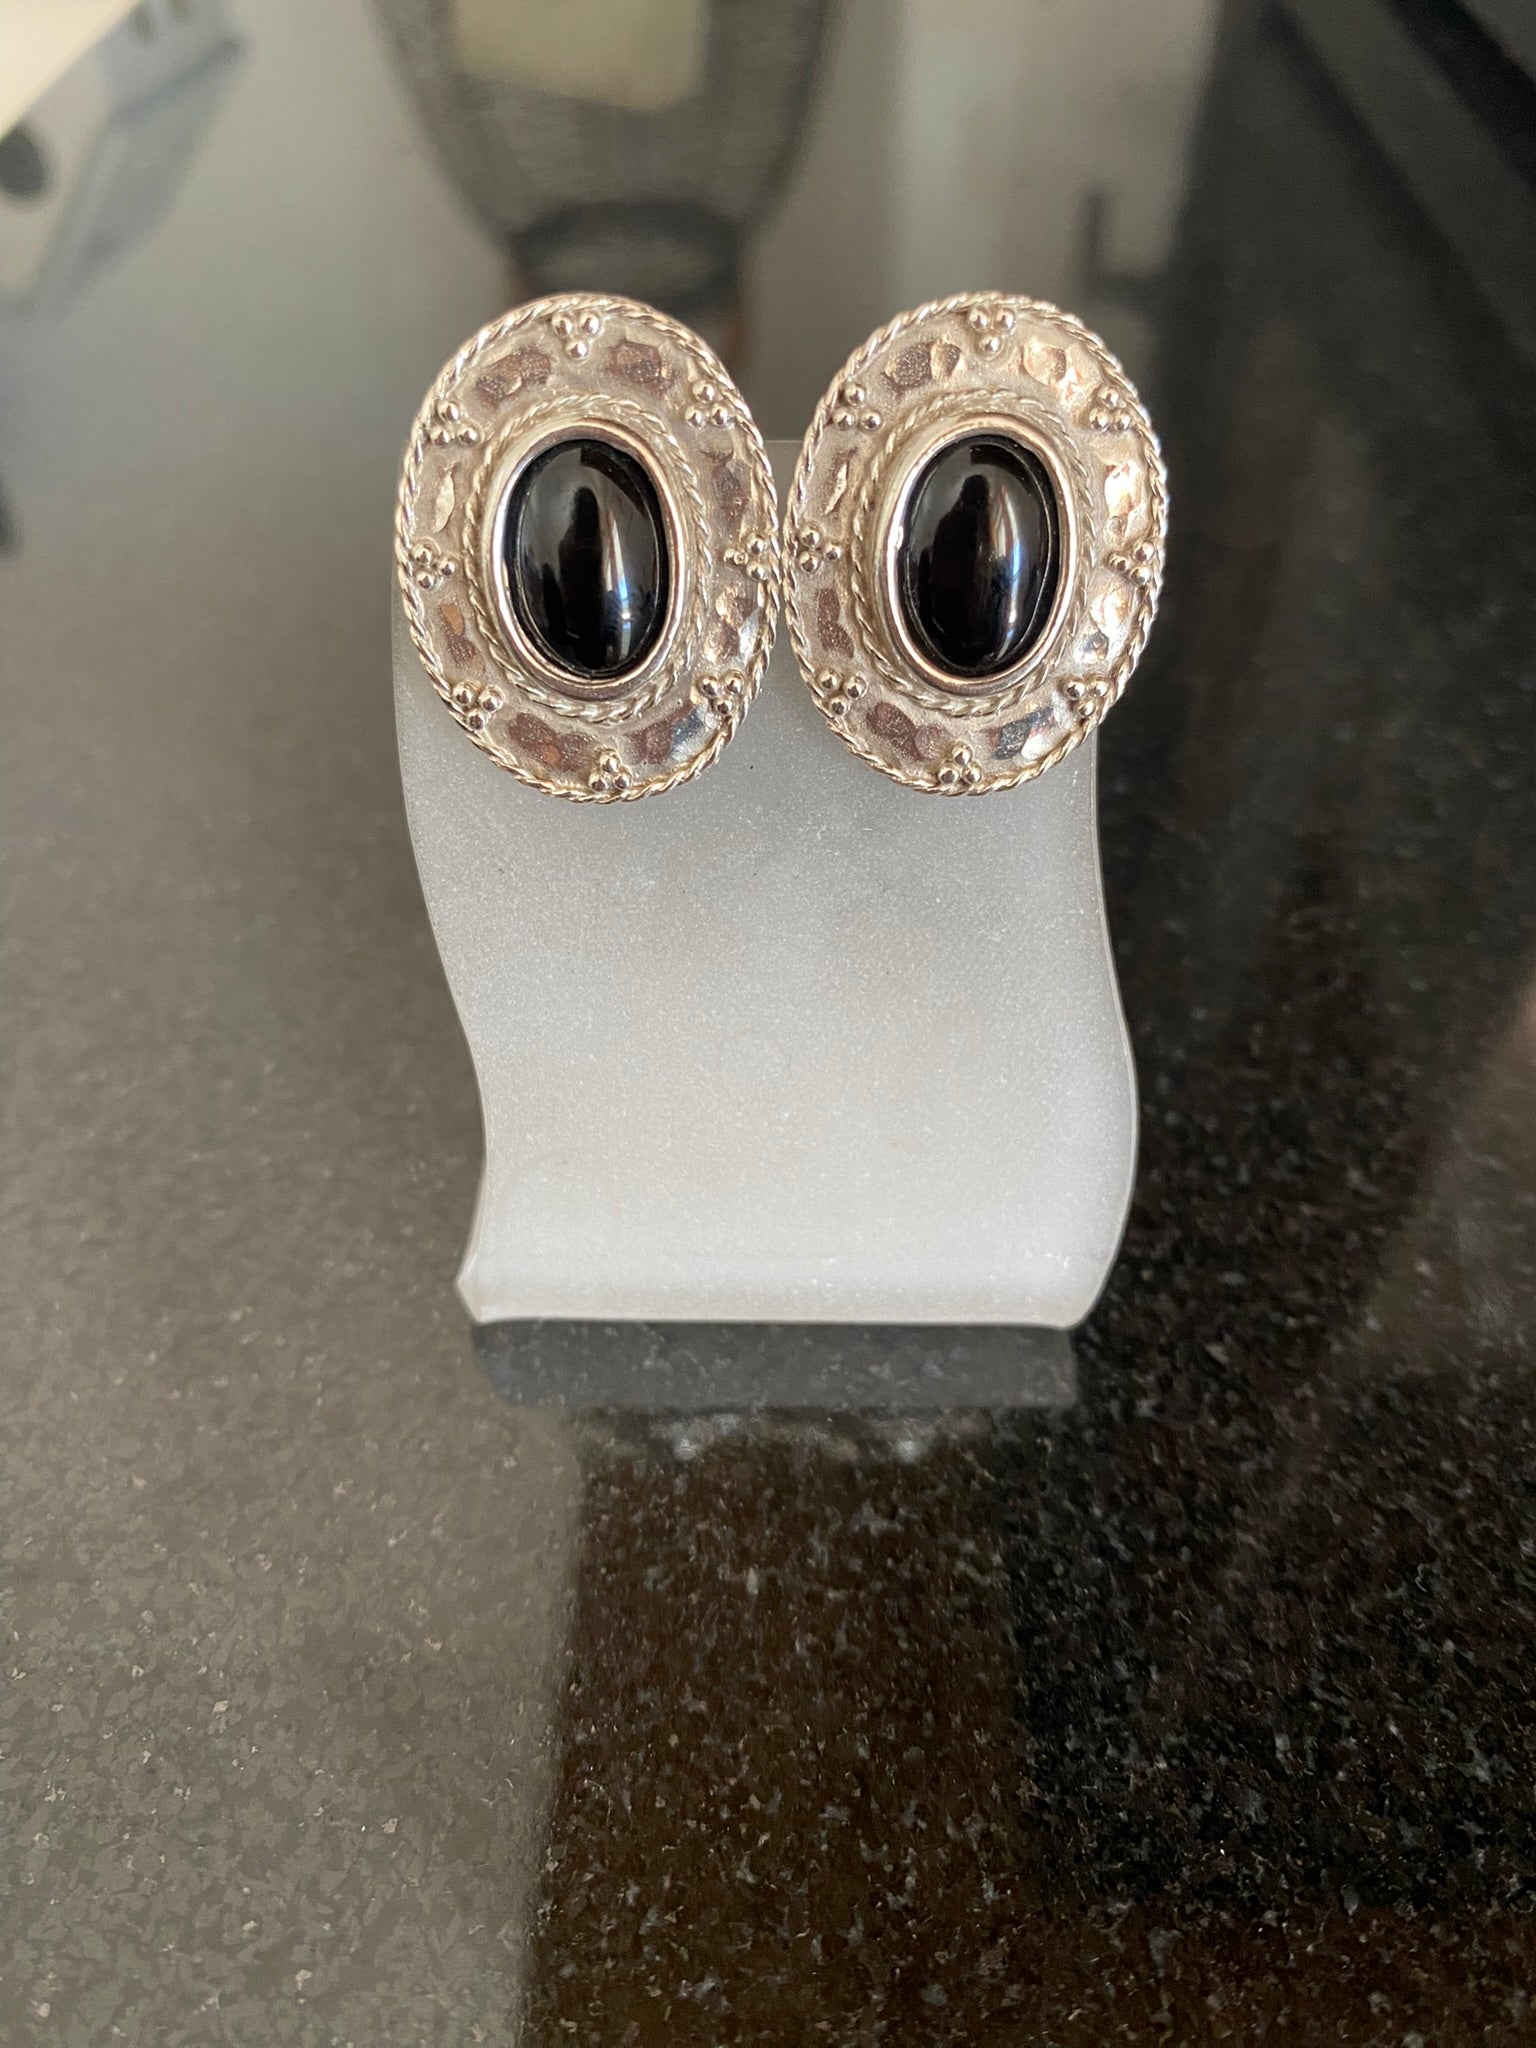 Greek Oval Earrings in Sterling silver with Gemstone (GT-02)